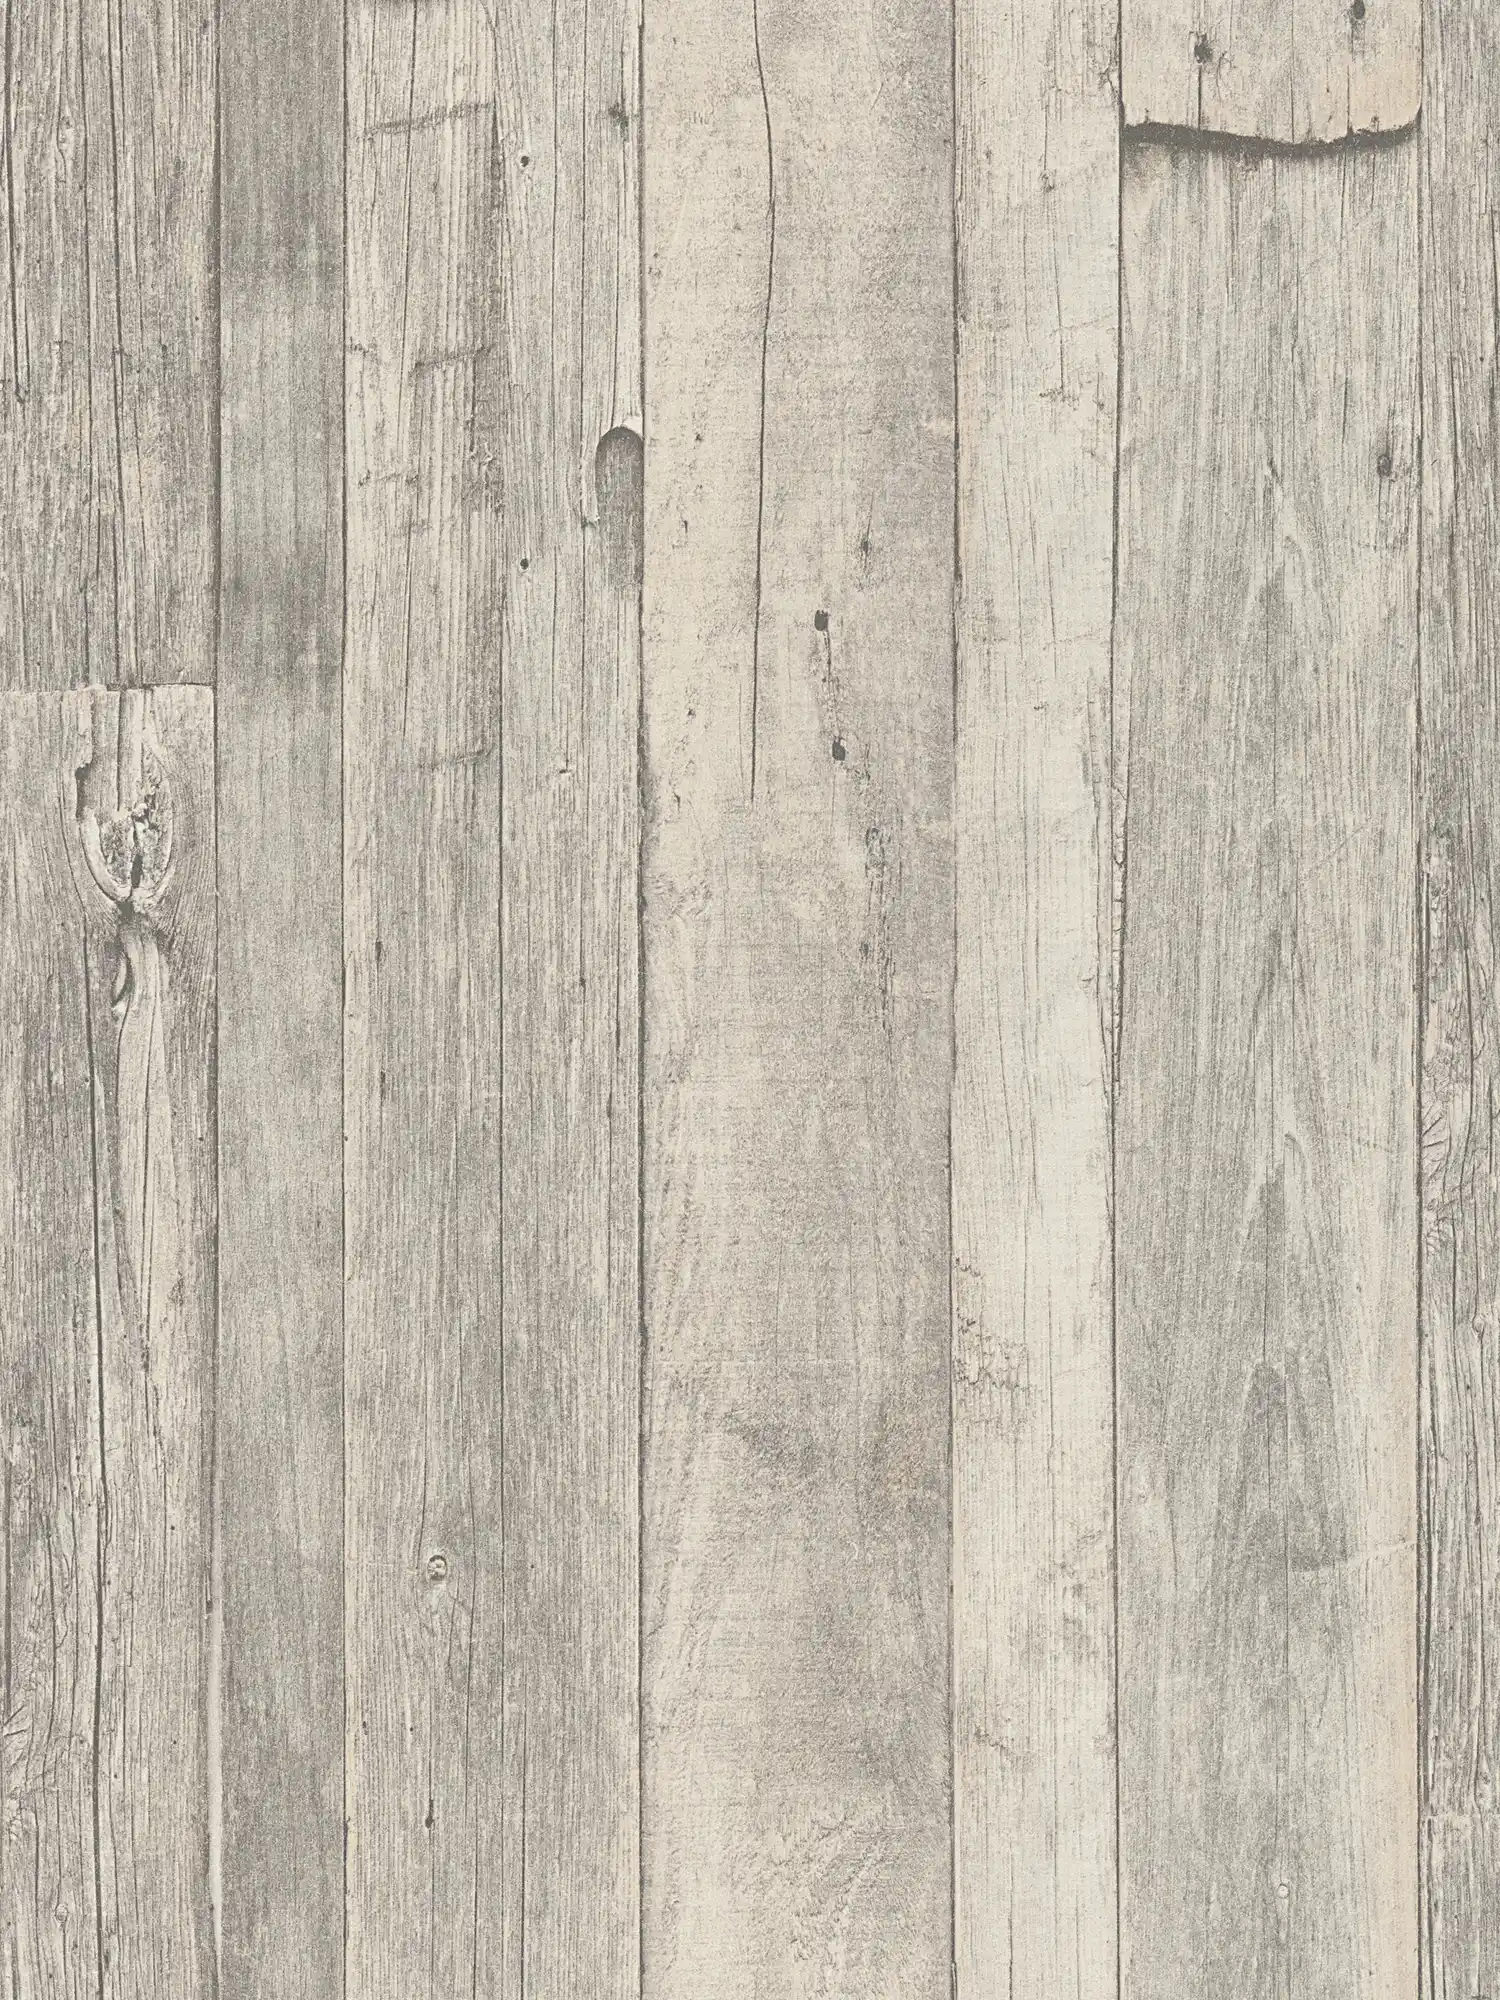         Holz-Tapete mit Brettern & Maserung im Vintage Design – Grau, Beige, Creme
    